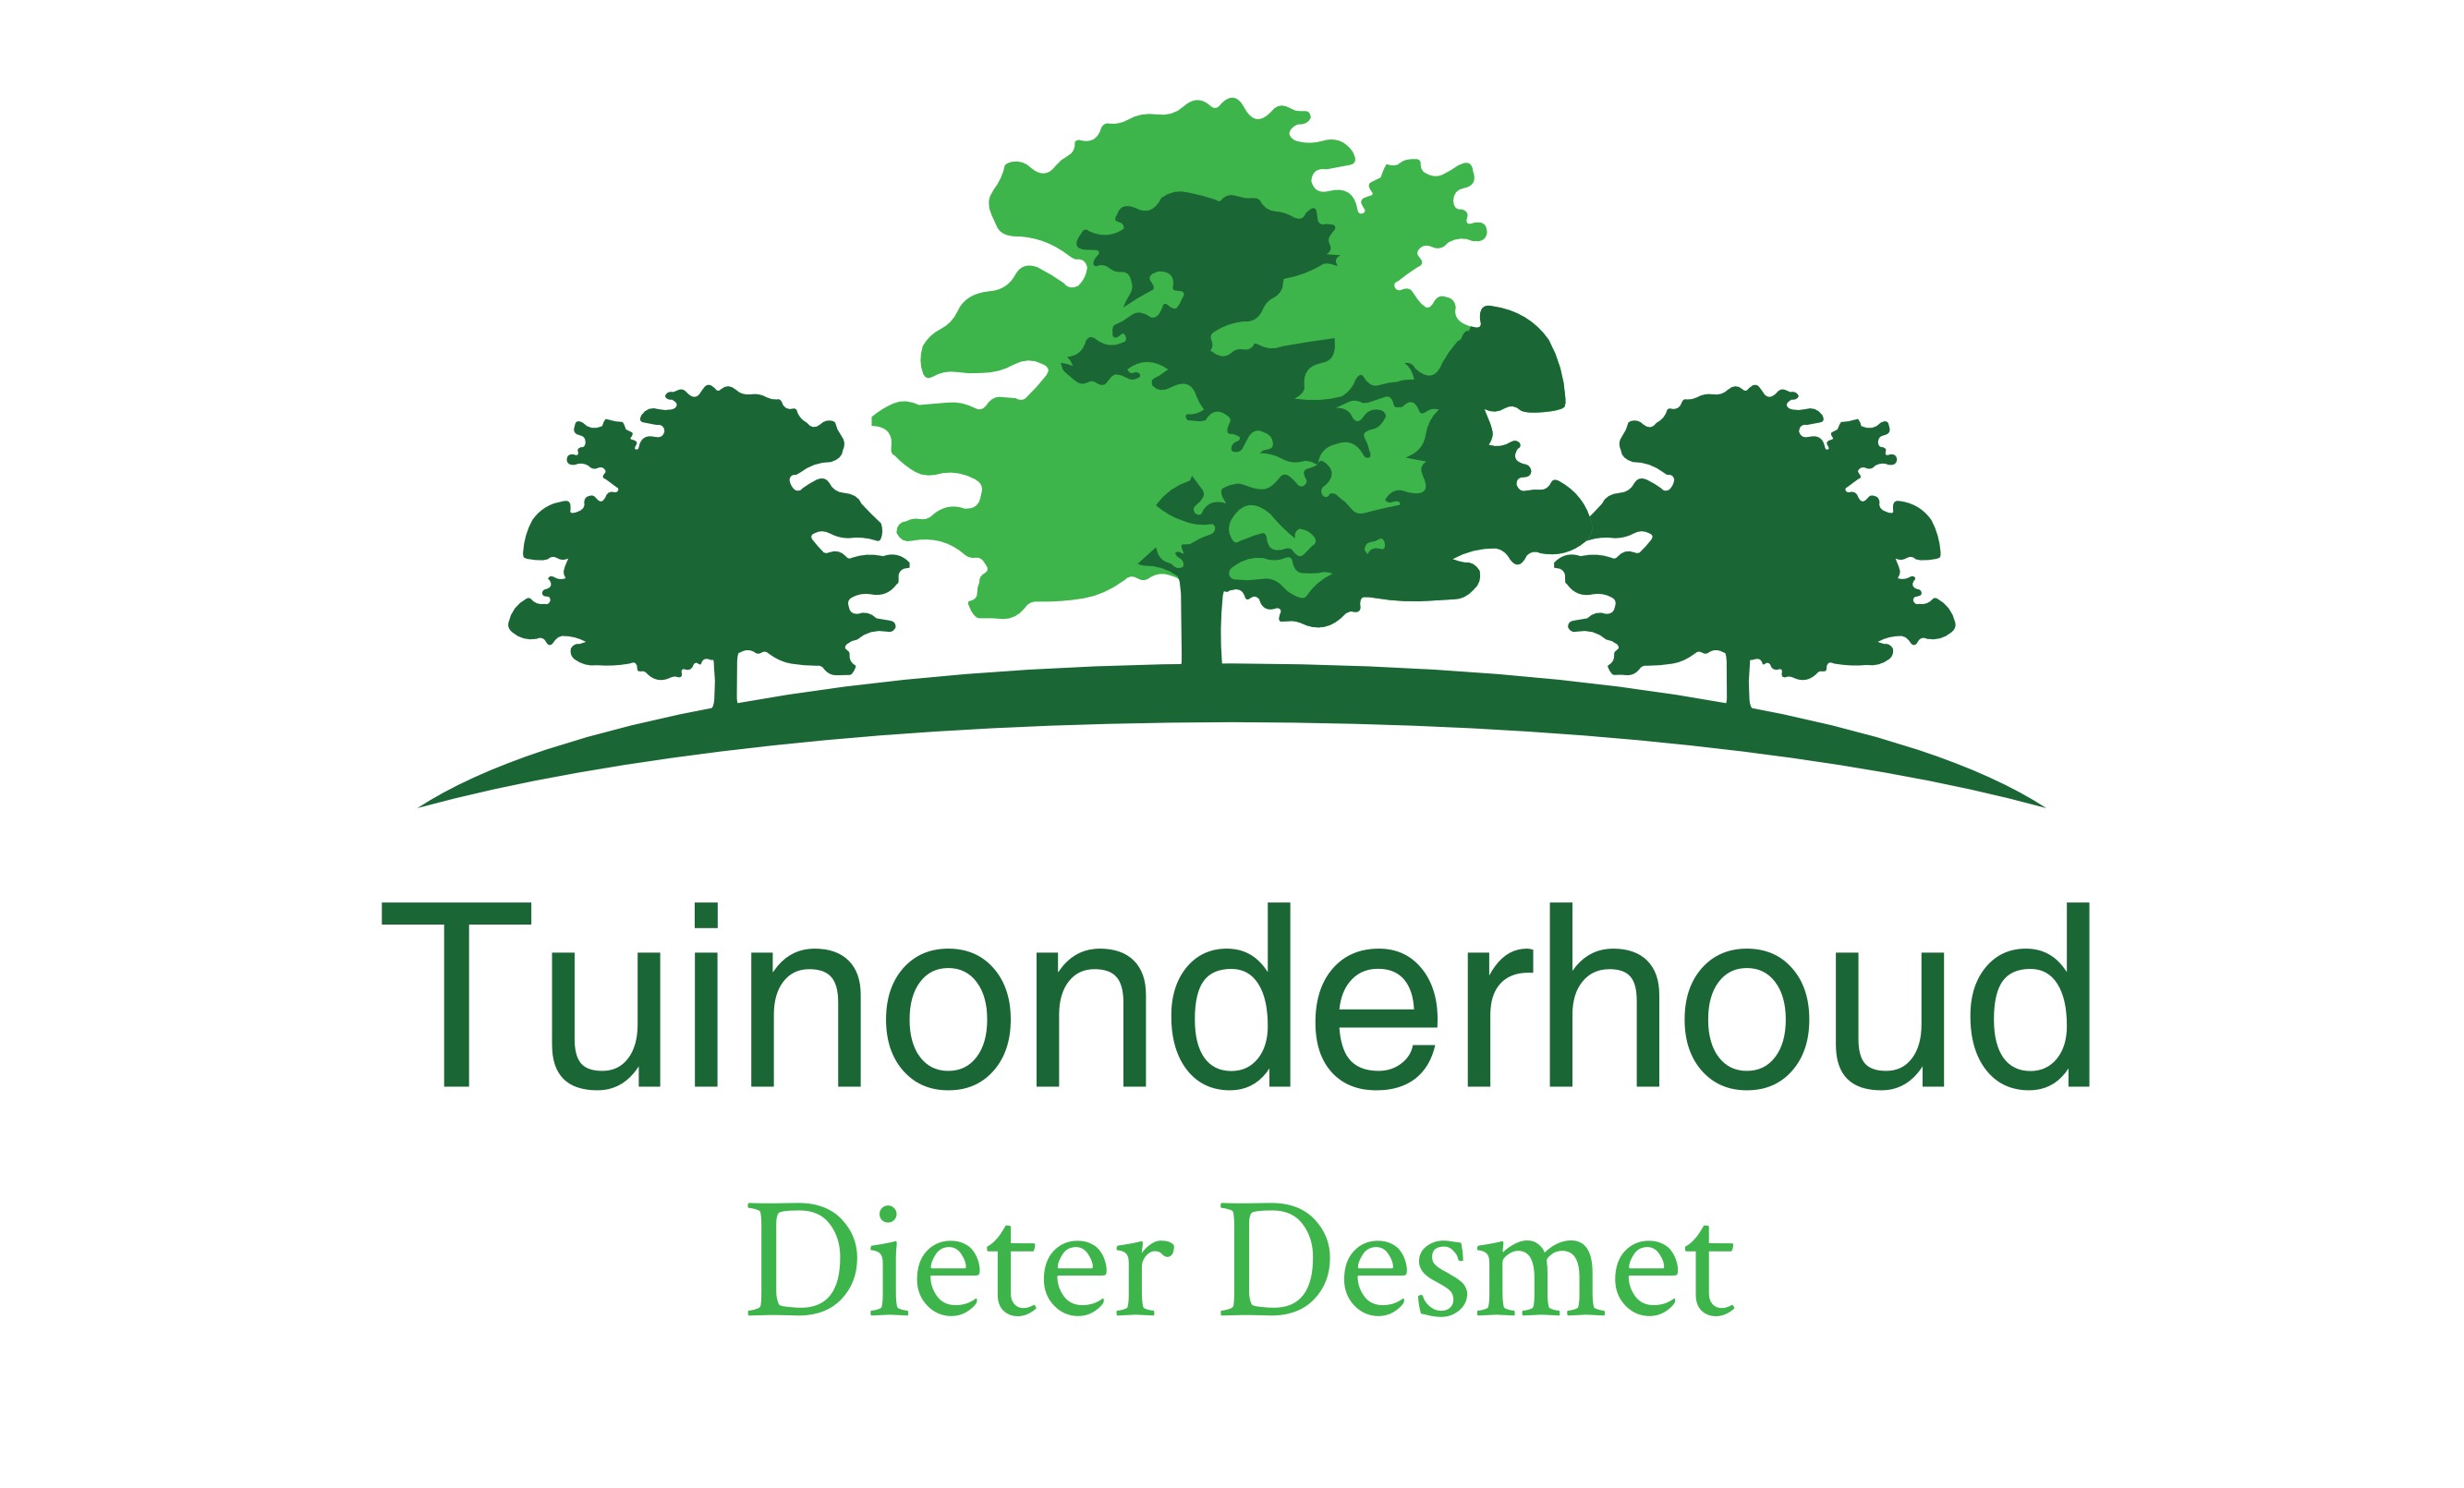 tuinmannen Ouwegem Tuinonderhoud Dieter Desmet